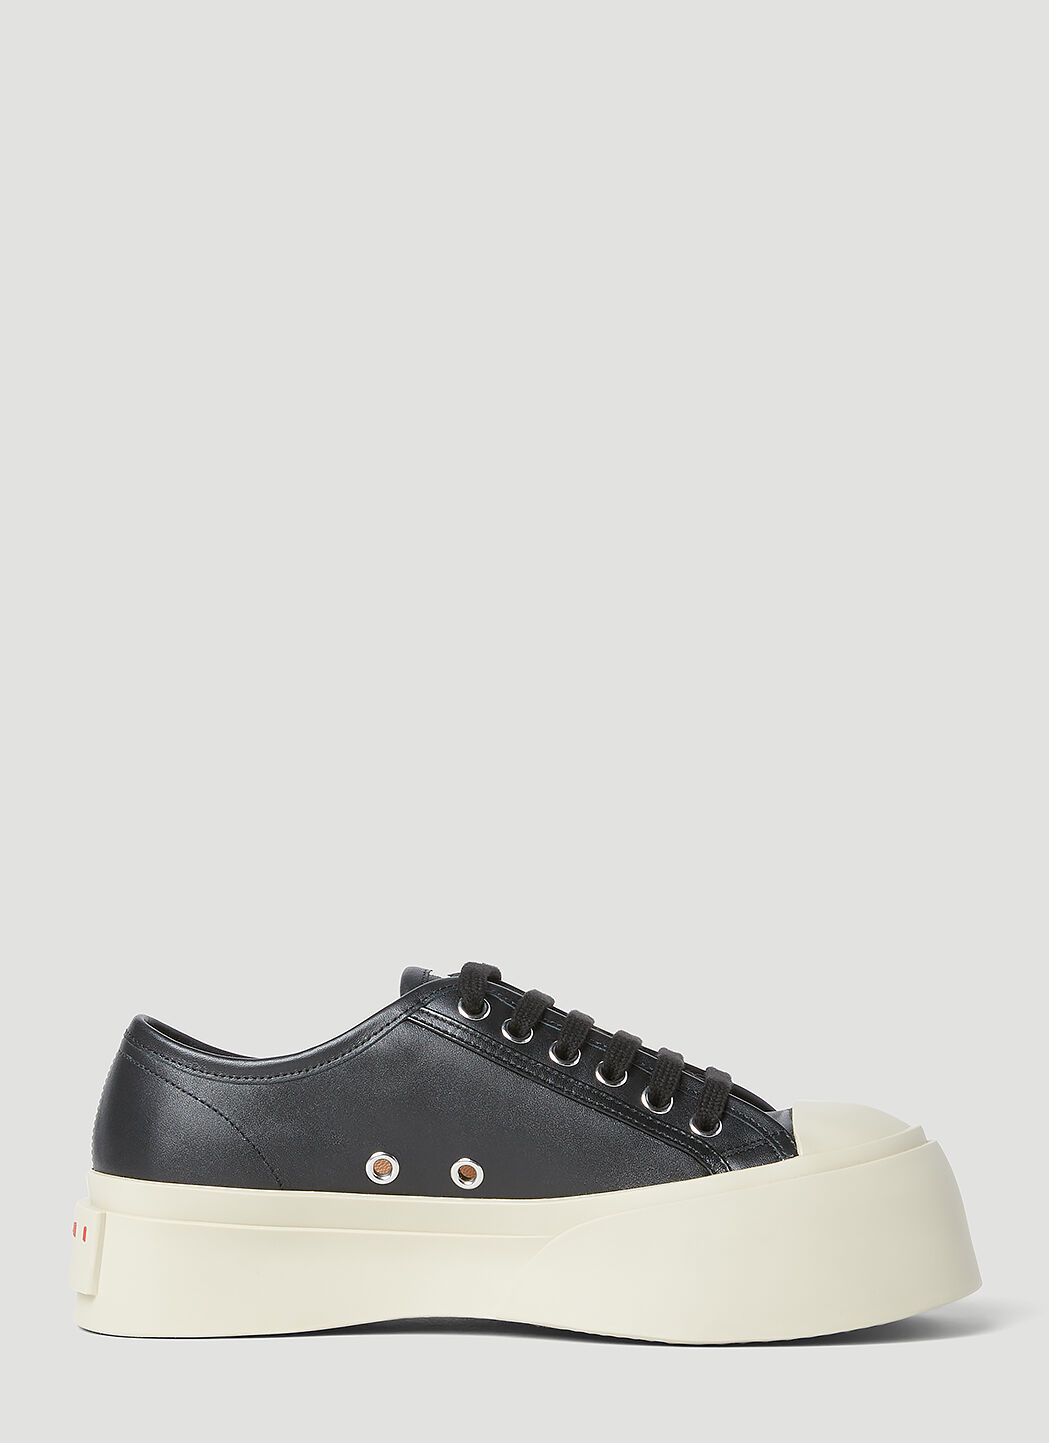 Marni Leather Pablo Sneakers White mni0255024